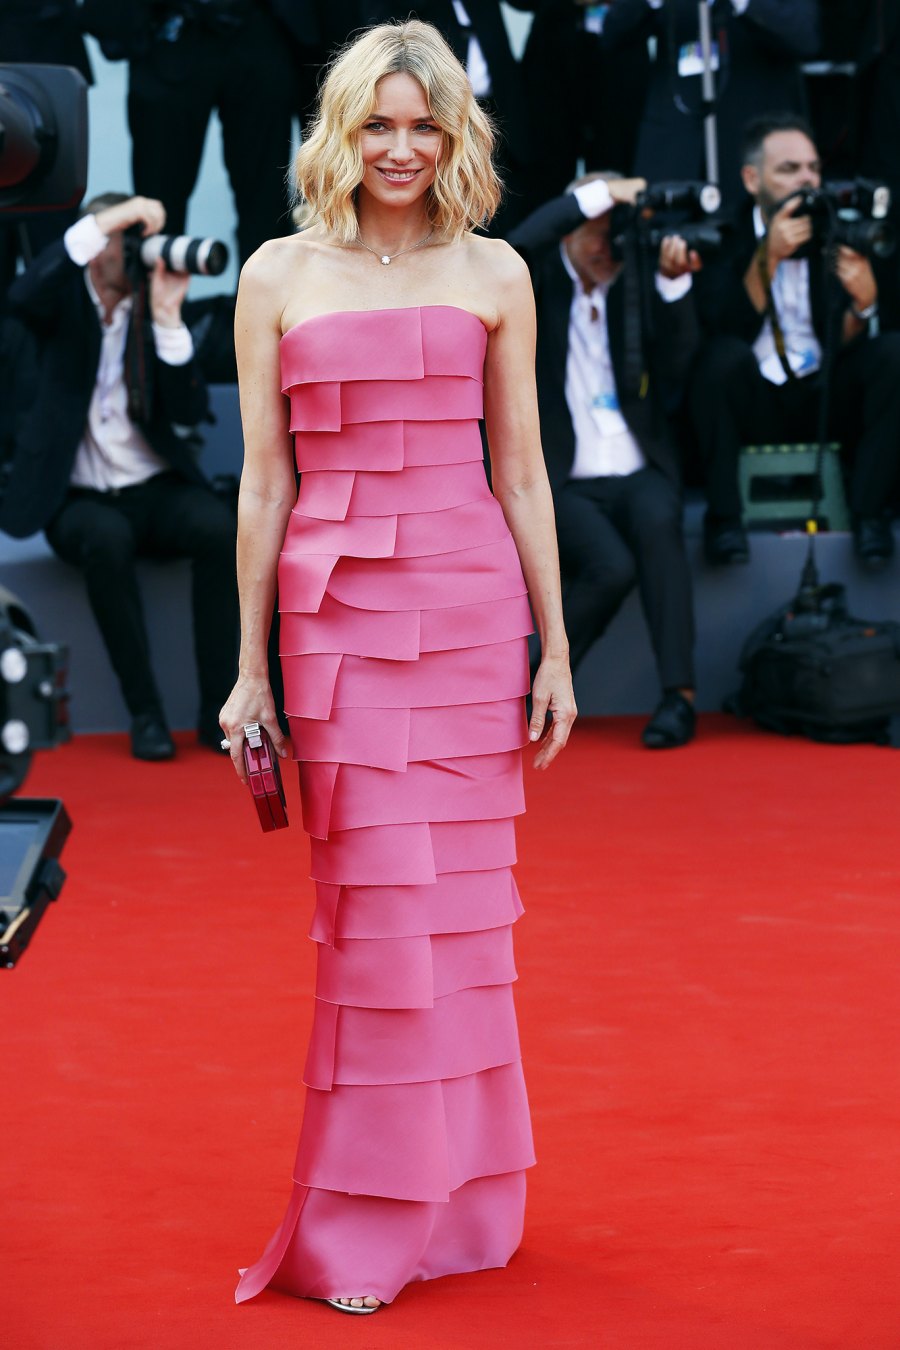 Timothée Chalamet at the 2021 Venice Film Festival | Venice Film Festival 2021: Best Dressed 